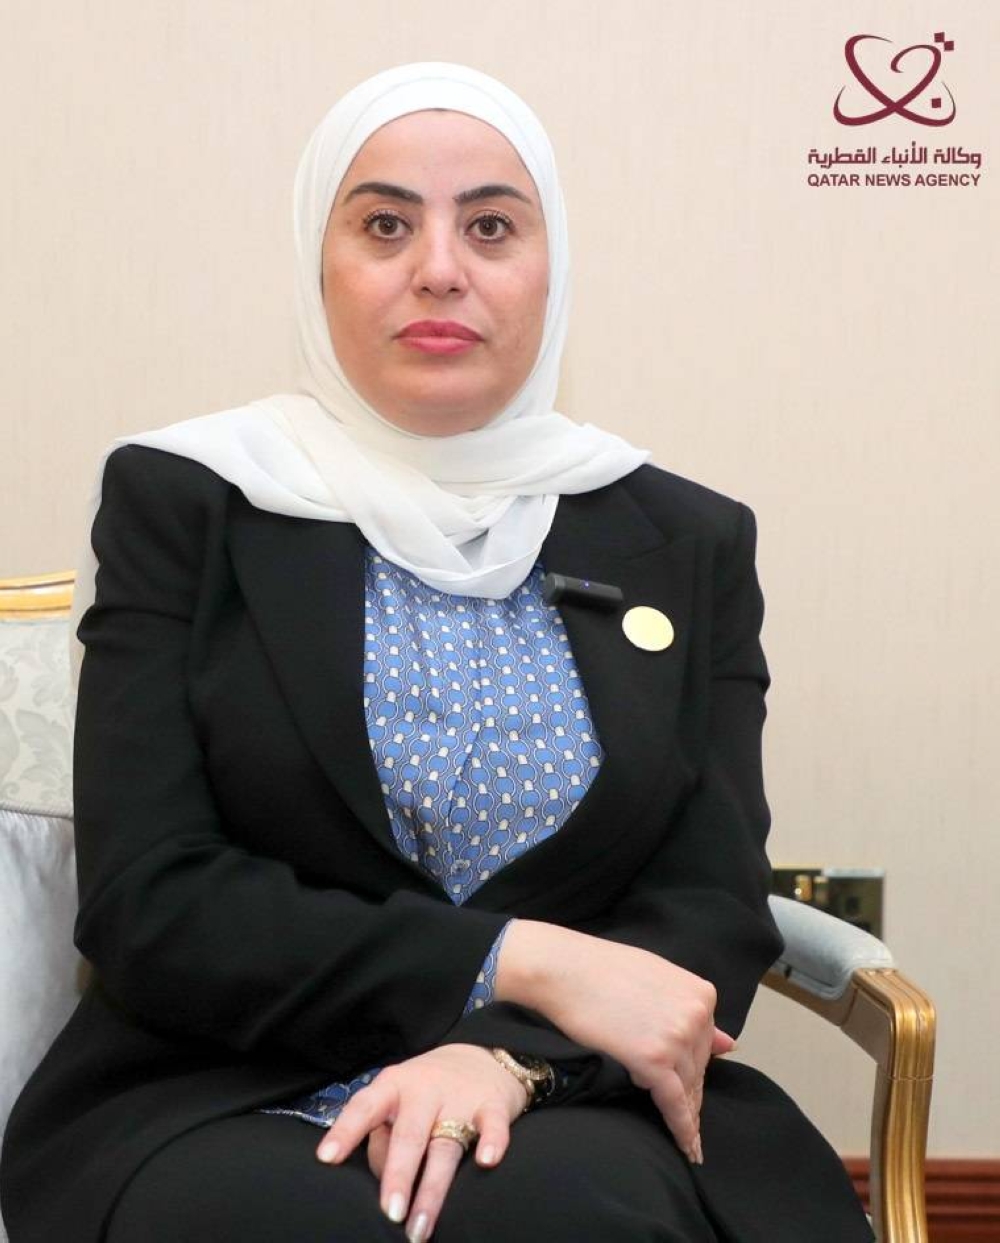 وزير أردني: وزراء الشؤون الاجتماعية العرب يناقشون ملفات ذات أهمية عالية لذوي الإعاقة